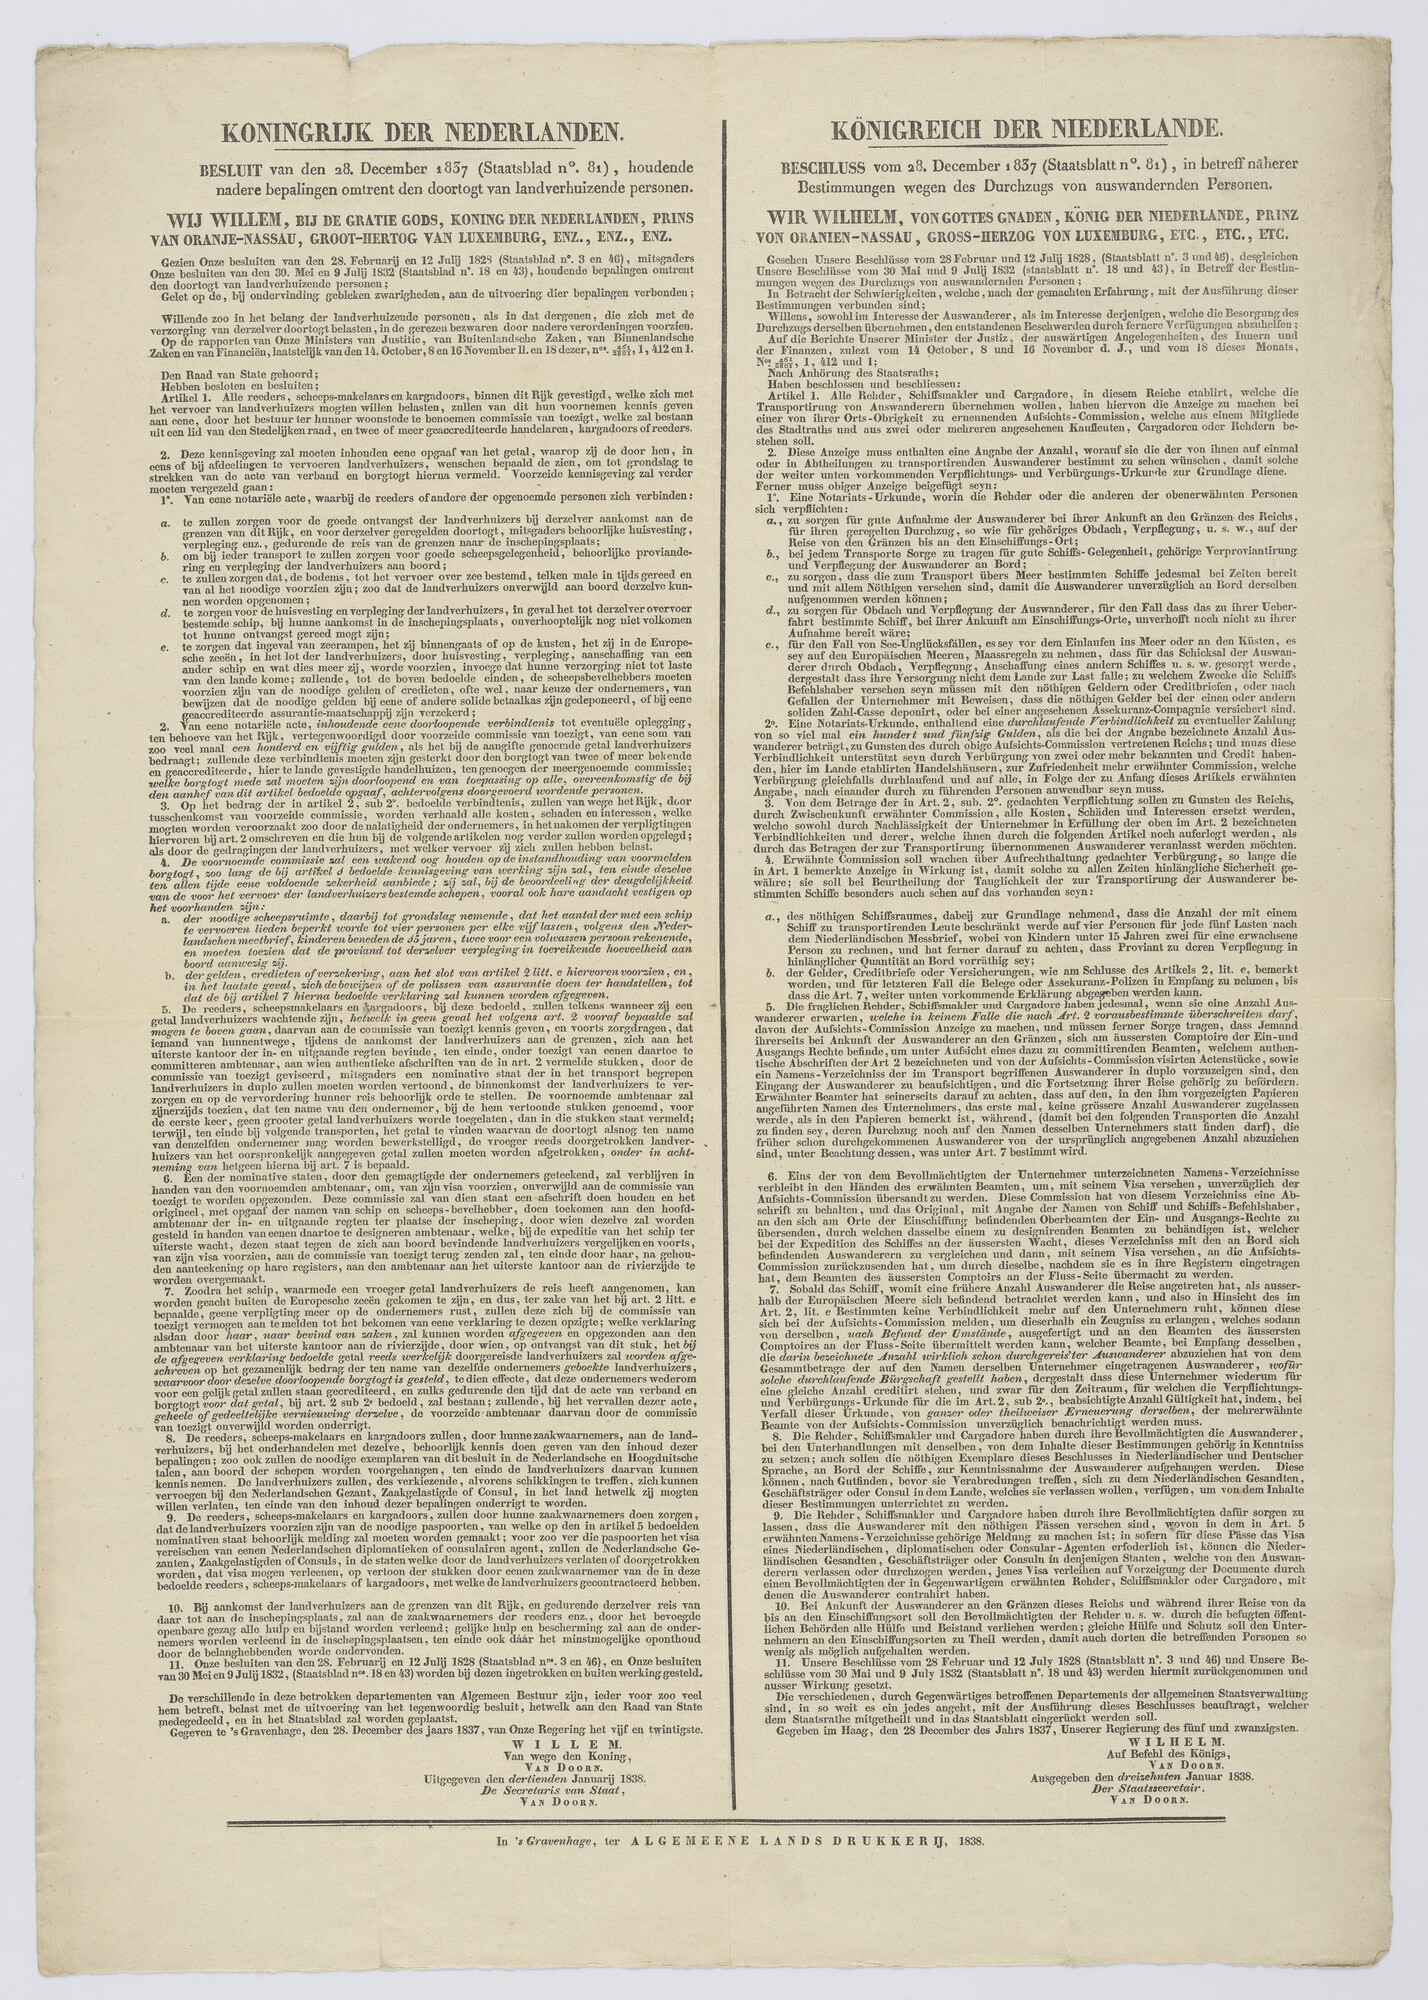 S.1847(22); Koninklijk besluit van 28 december 1837 over de doortocht van landverhuizende personen; verordening